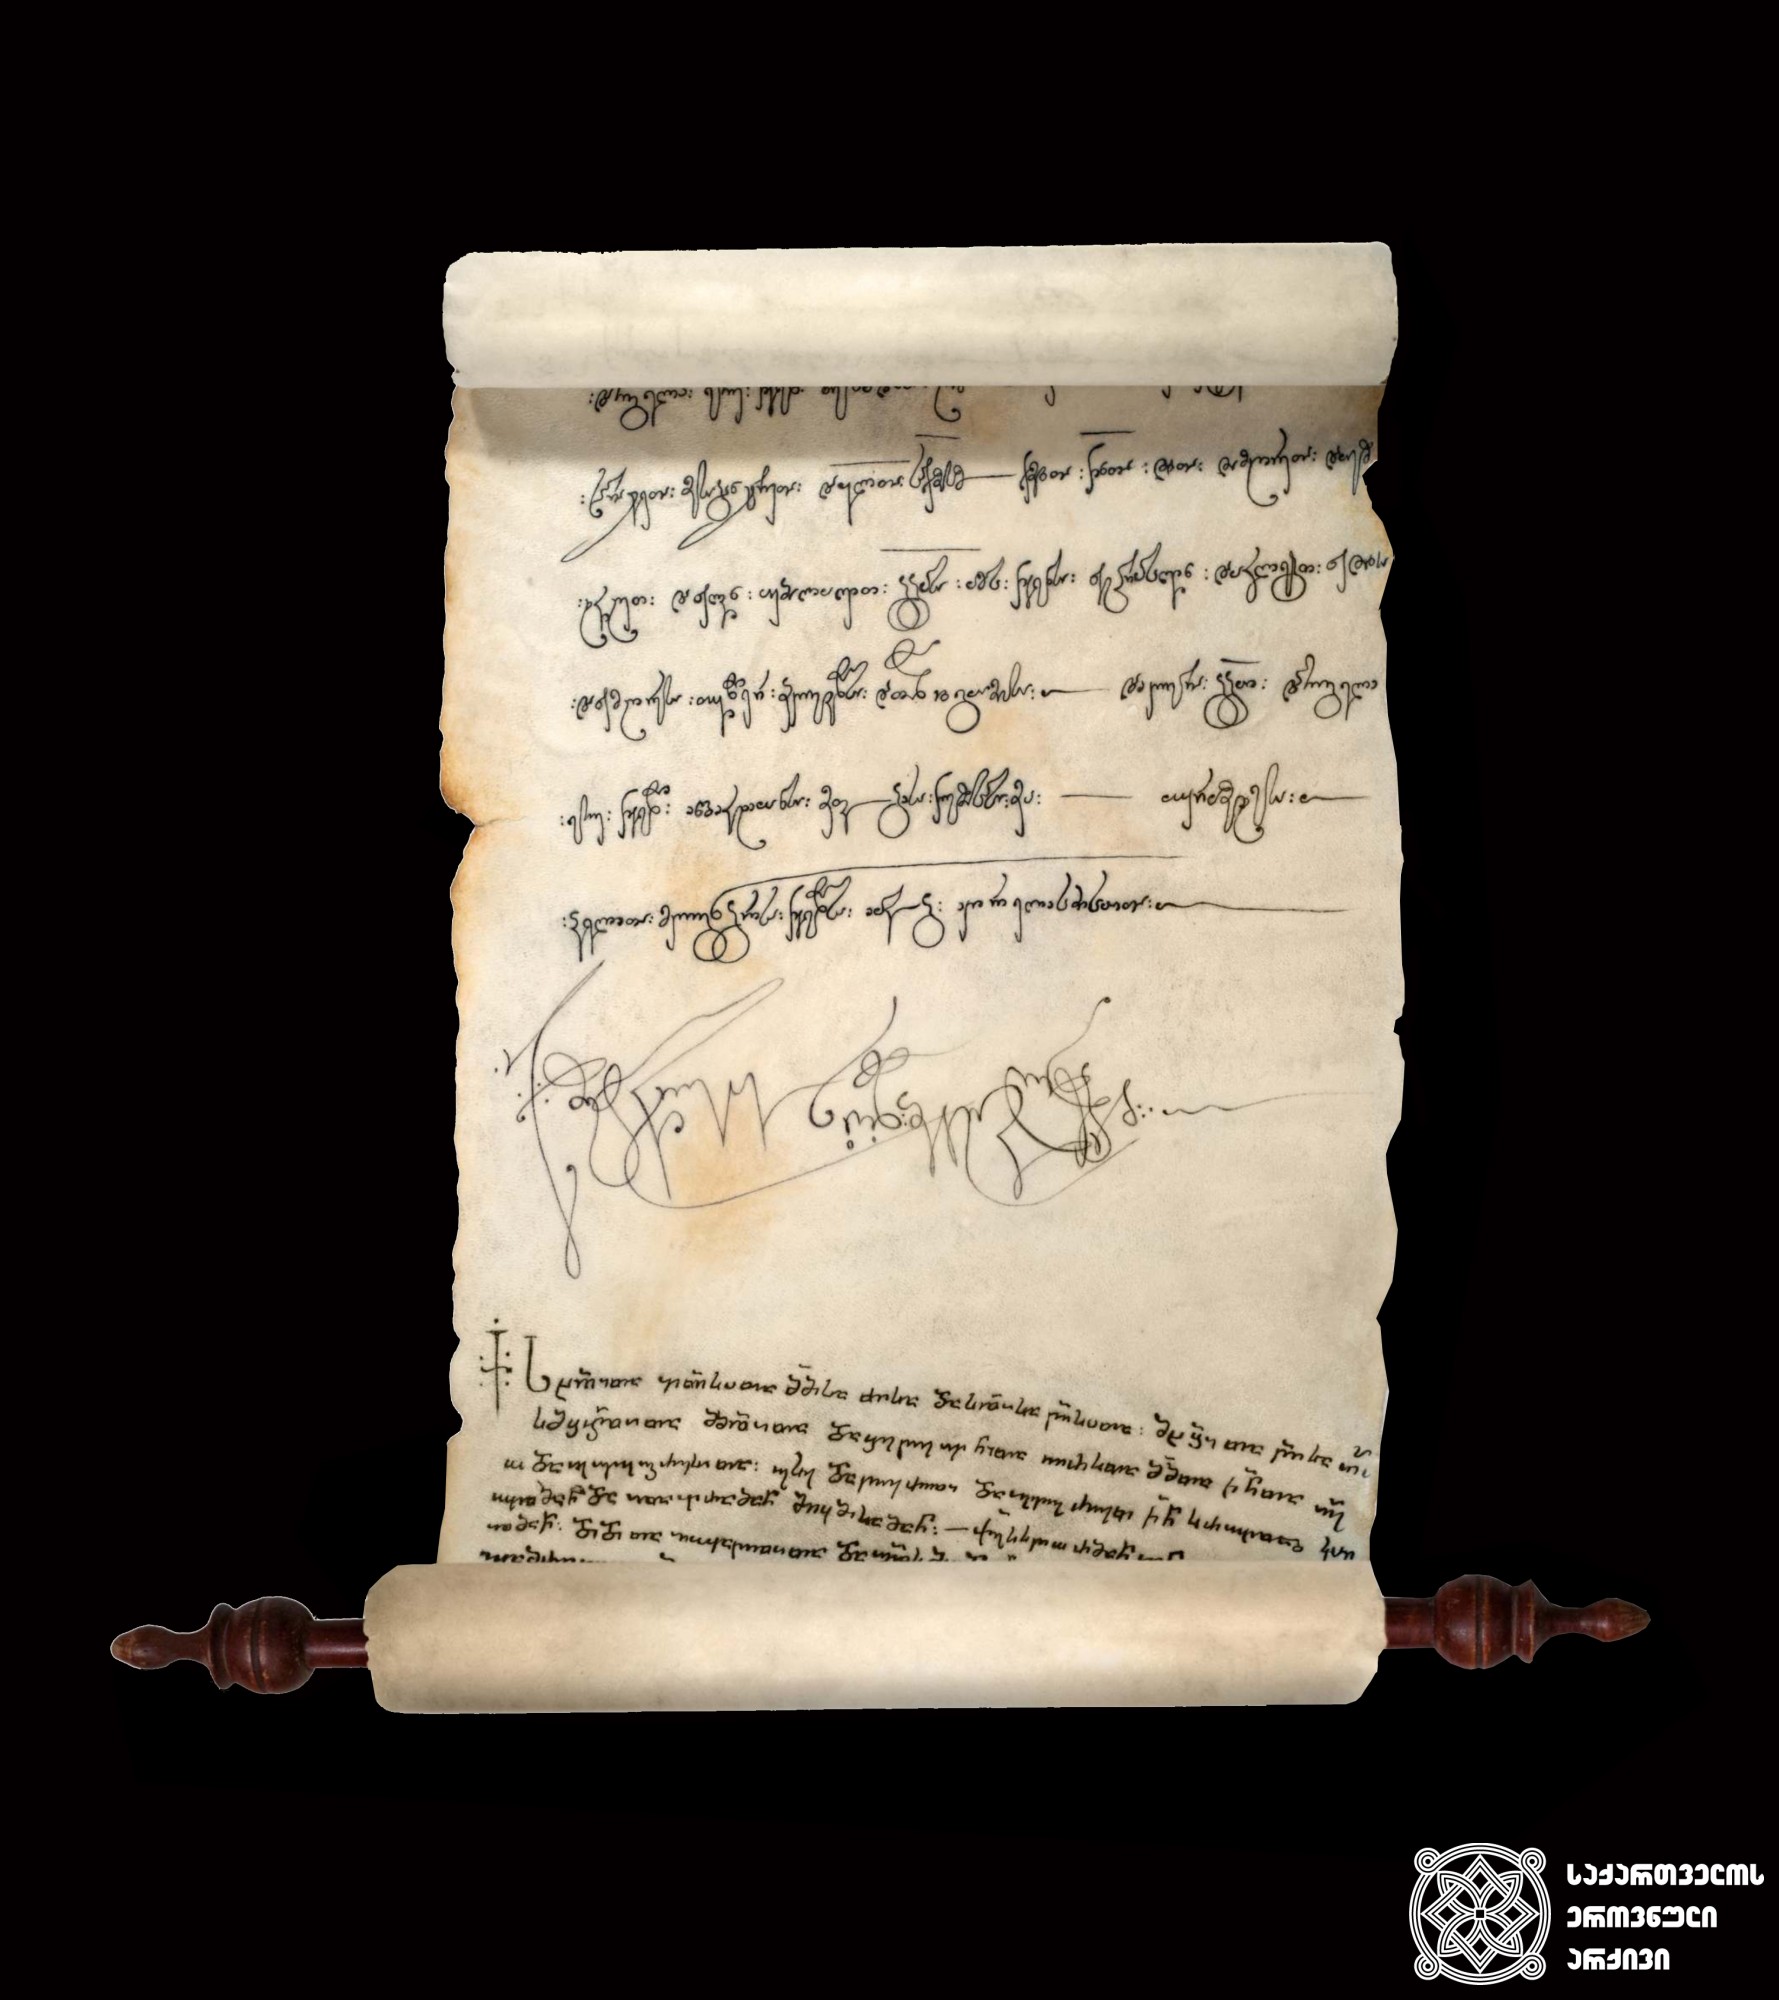 მხედრული. ყმების შეწირულების სიგელი მეფე თამარისა შიომღვიმის მონასტრისადმი. 1202 წელი. მულაჟი. <br>
Mkhedruli script. The donation deed of the serfs, issued by the King Tamar to Shio-Mghvime monastery, 1202. Waxwork.